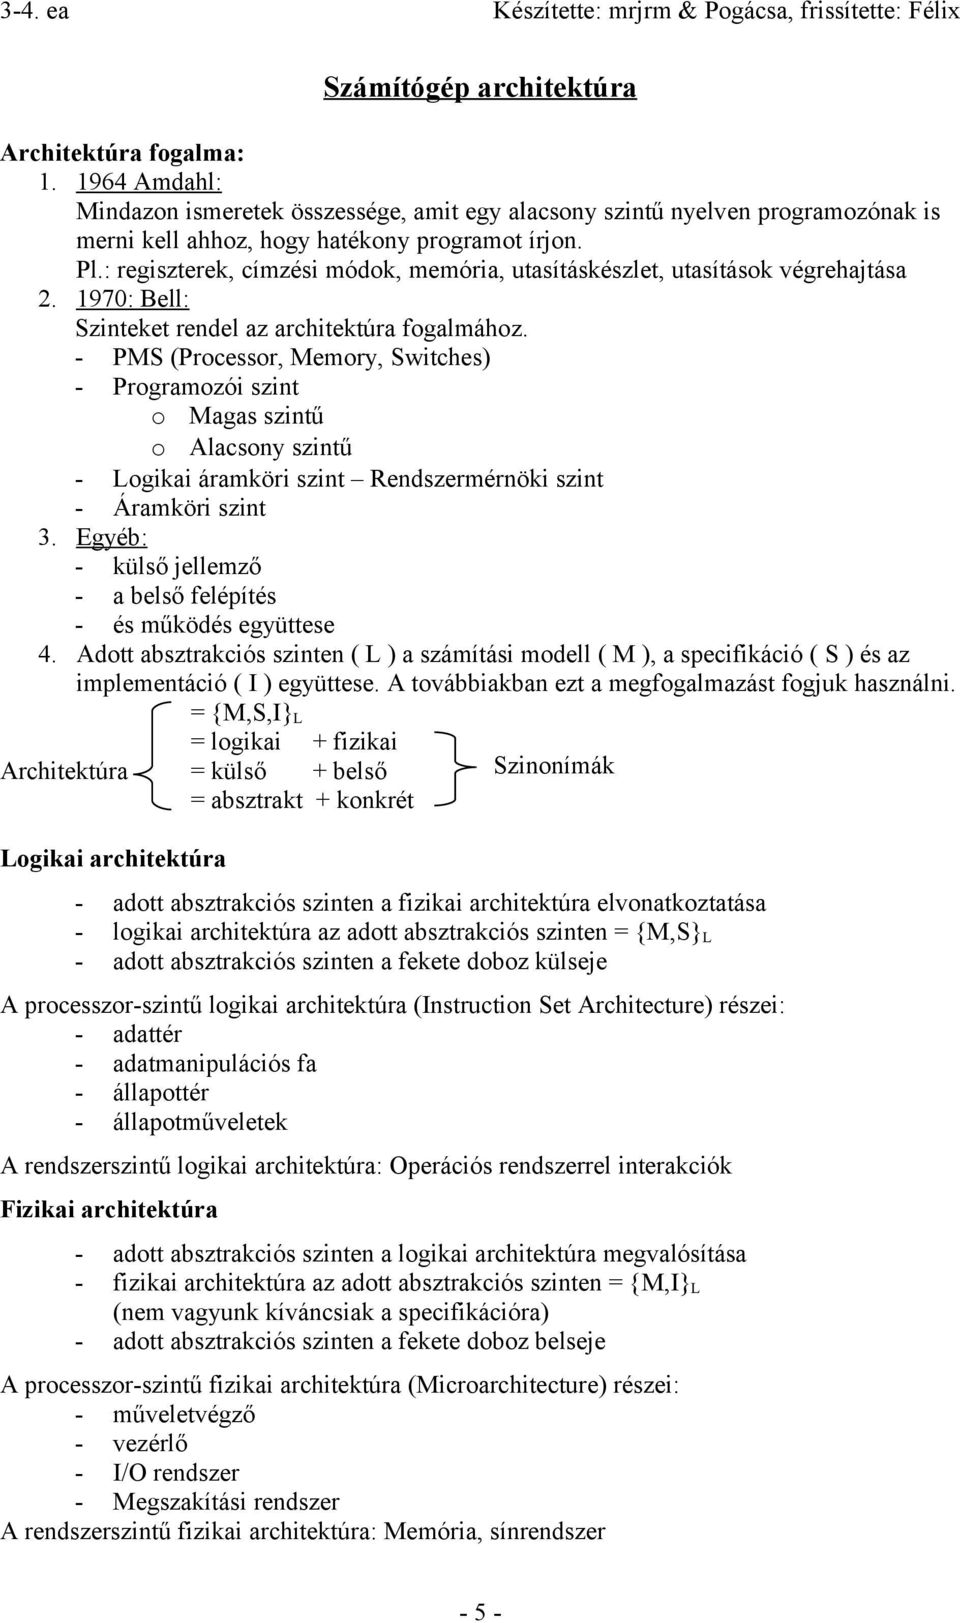 Számítógép architektúrák I. - PDF Ingyenes letöltés